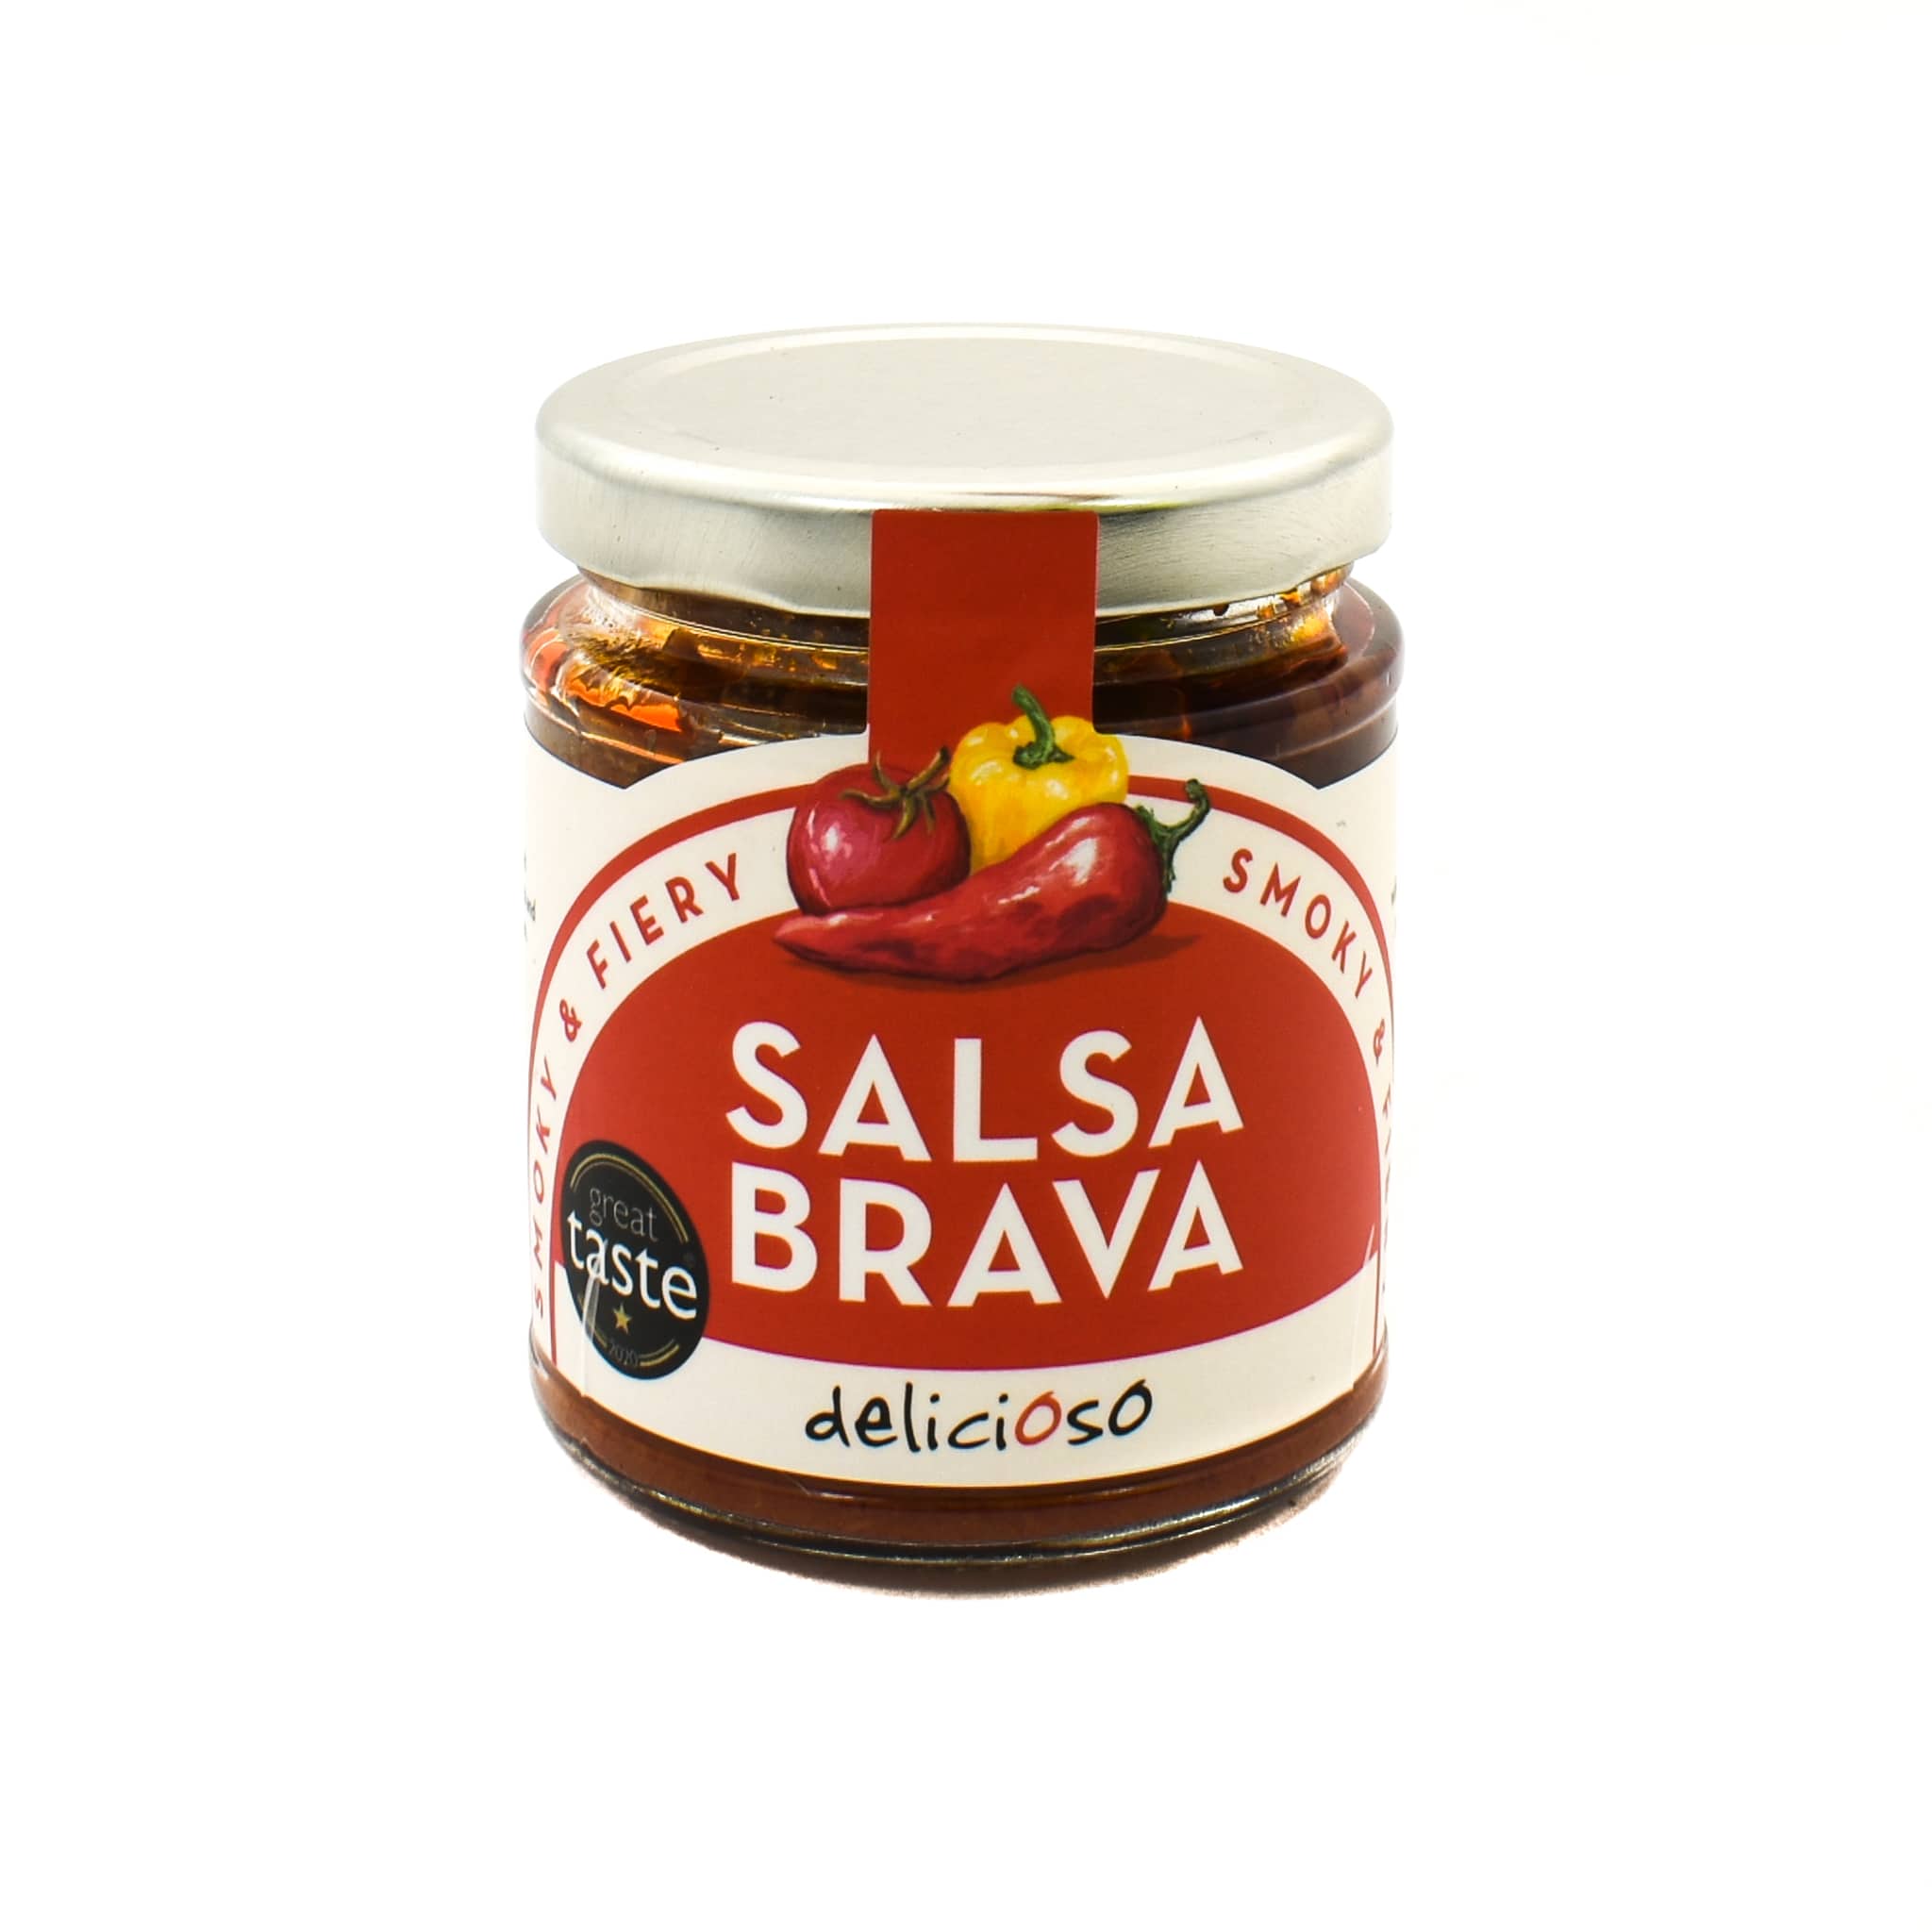 Delicioso Salsa Brava 165g